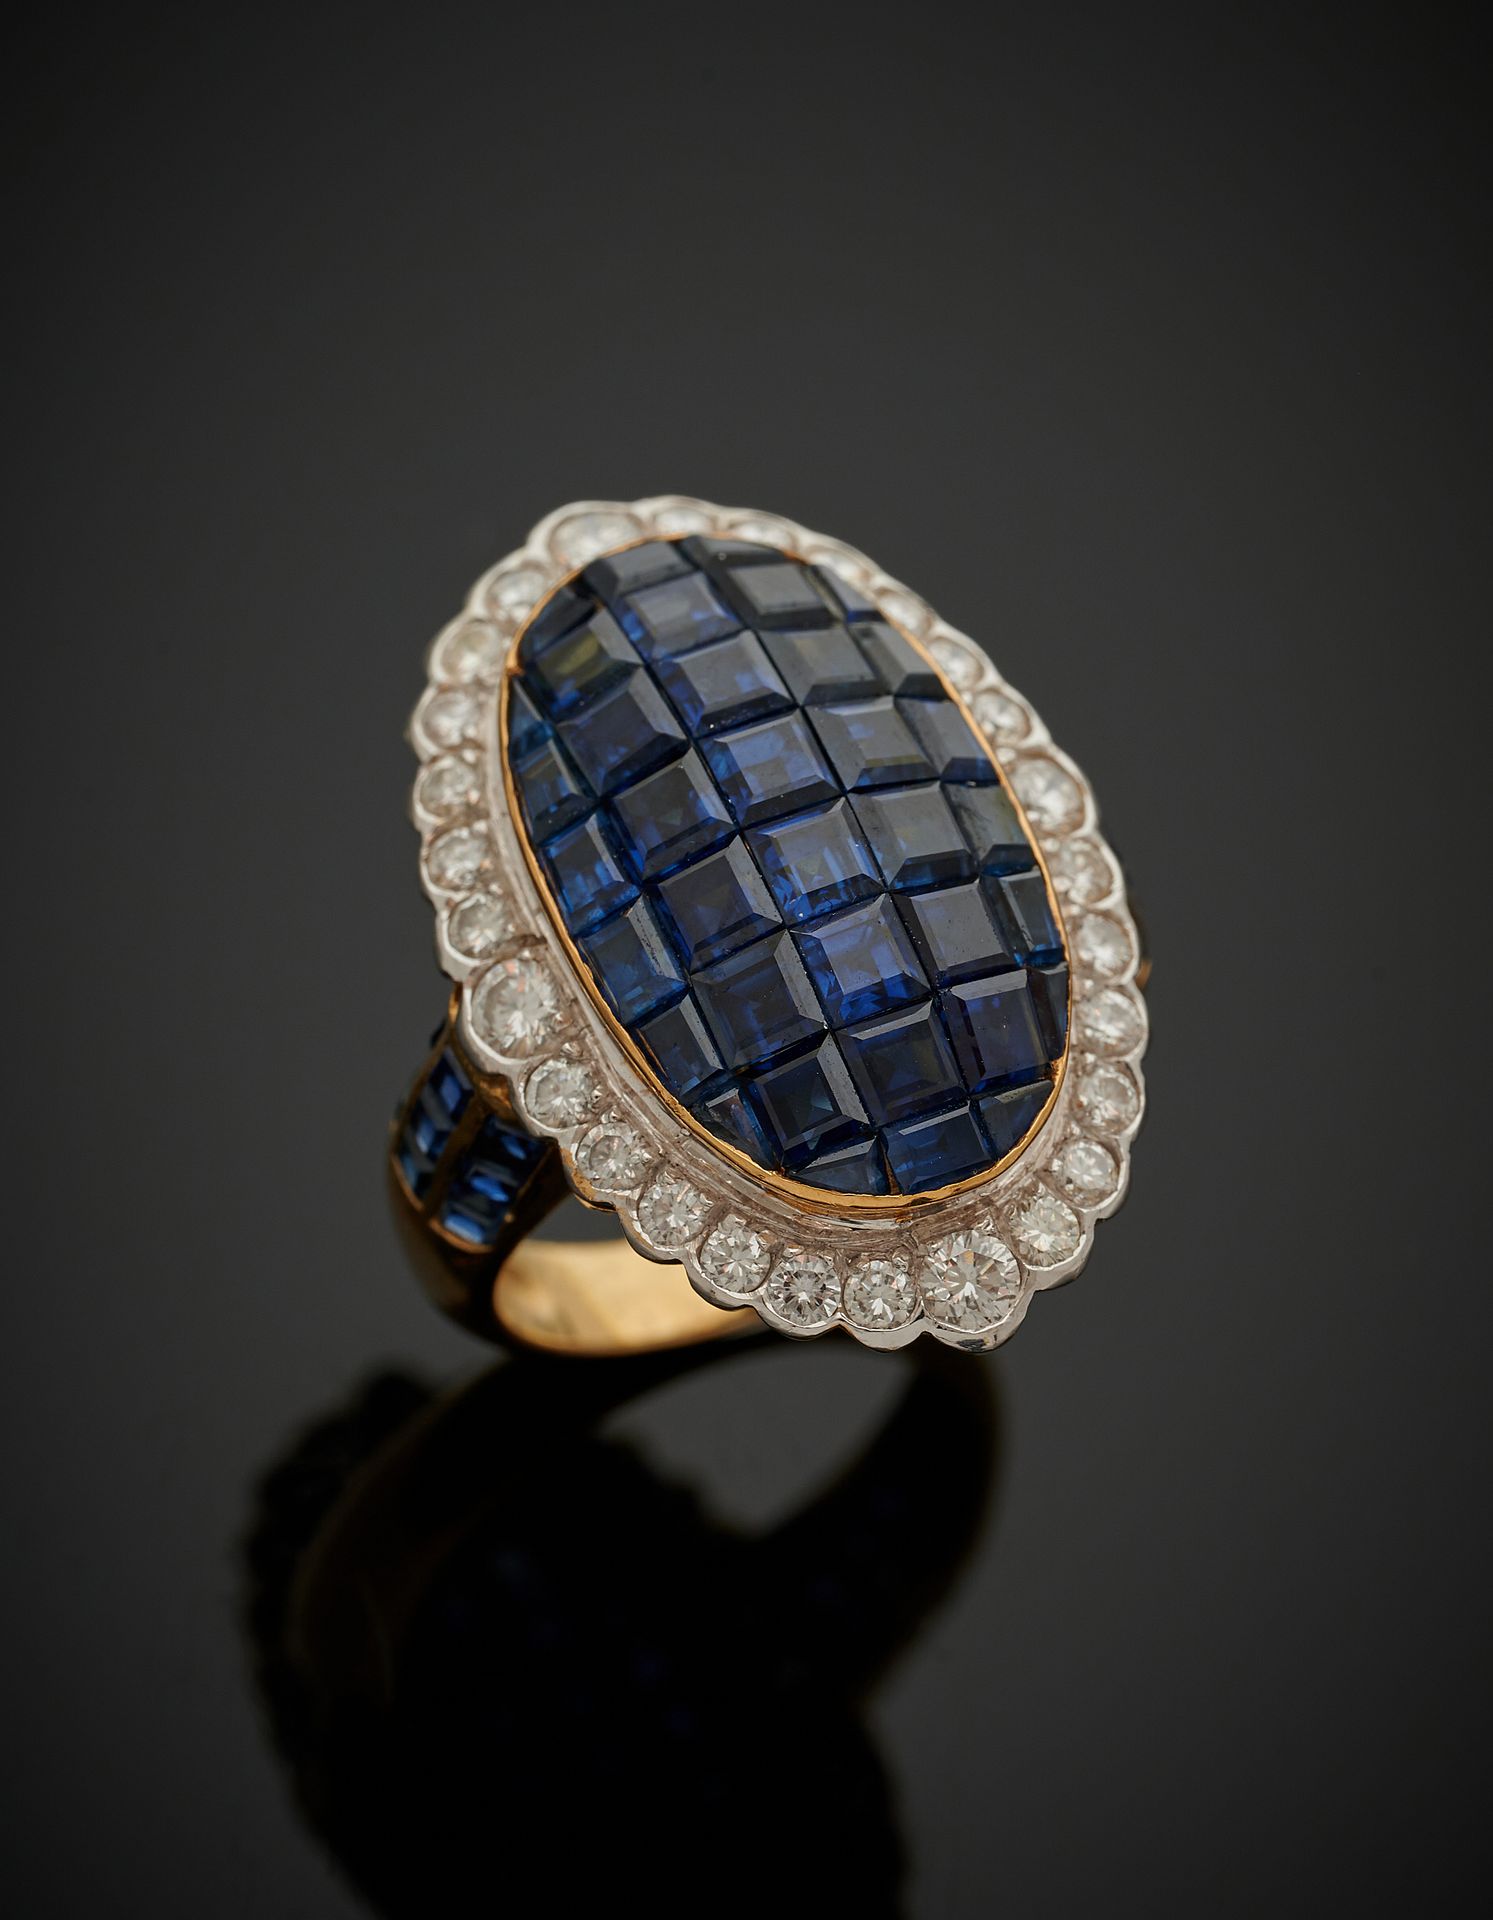 Null 一枚白金和黄金（750‰）的椭圆形戒指，以隐形镶嵌的方式镶嵌校准蓝宝石，周围是明亮式切割的钻石，肩部是三条排列的校准蓝宝石。

手指：56。毛重：10&hellip;